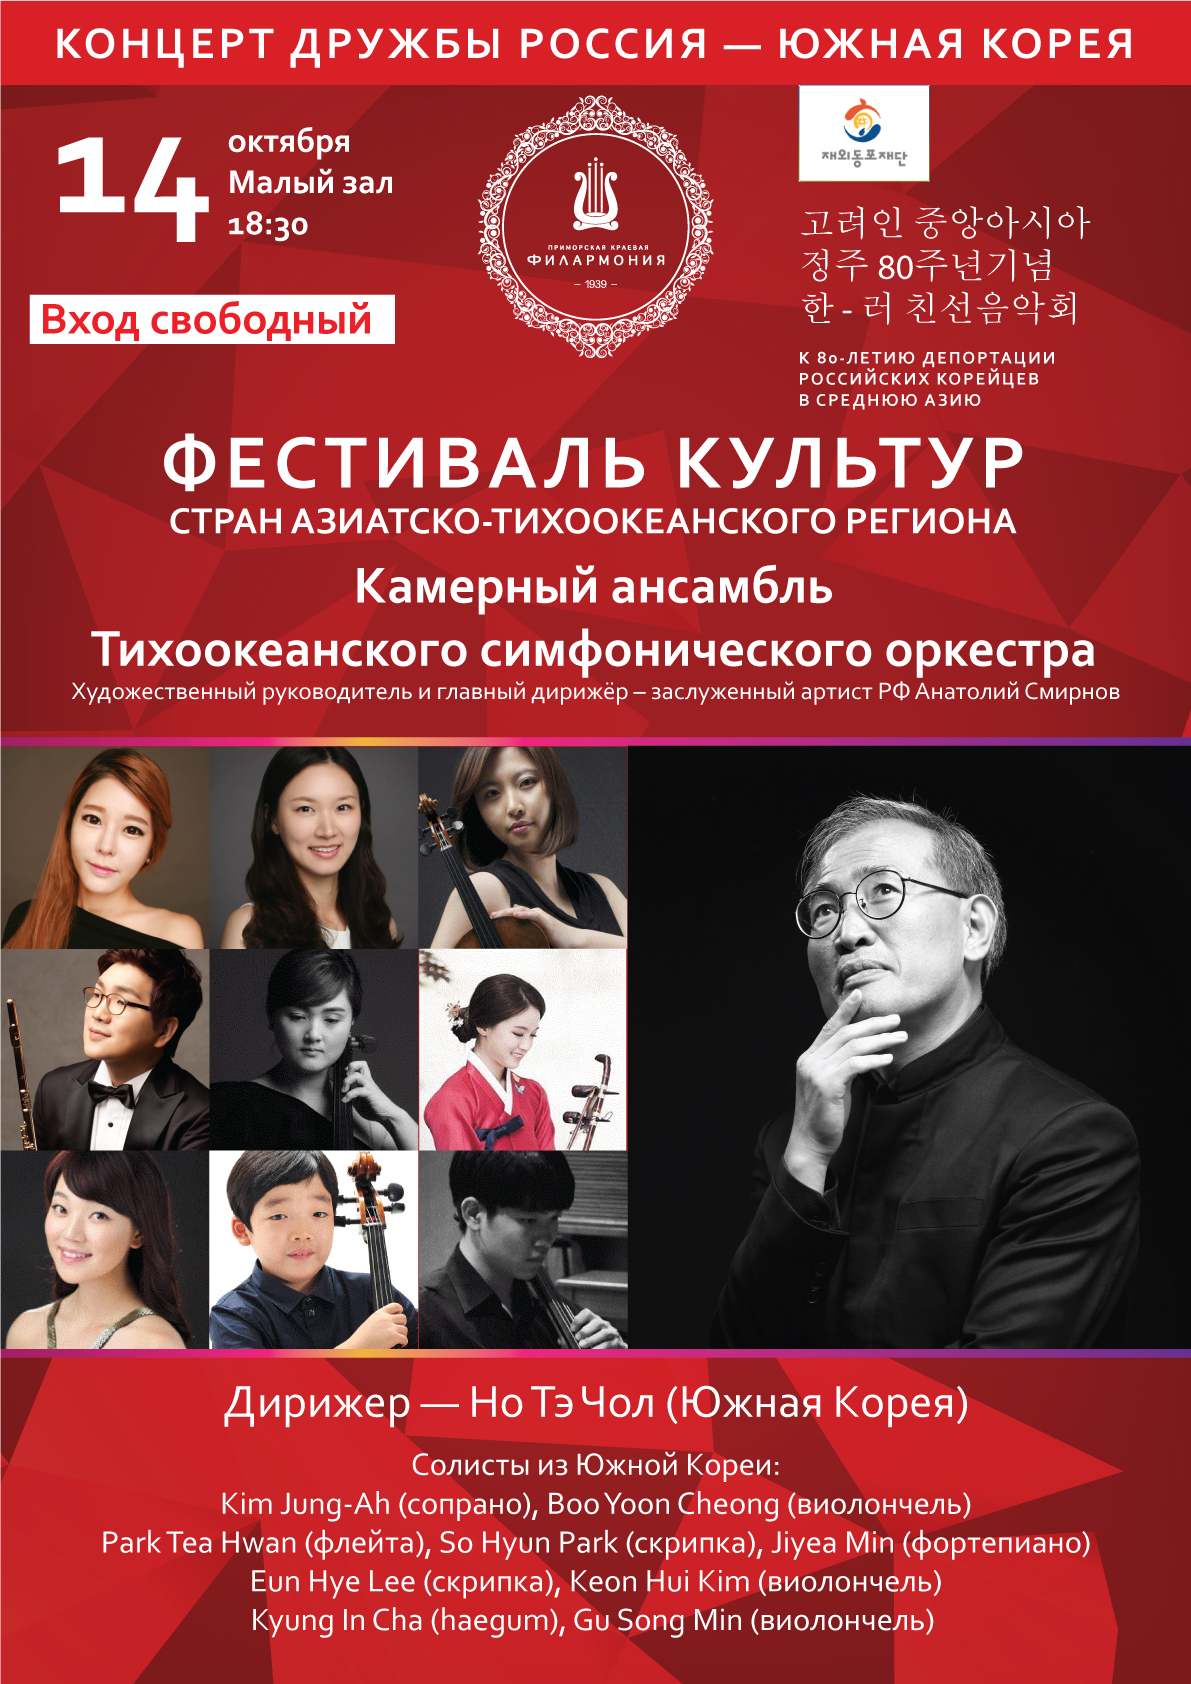 14 октября | Концерт музыкантов из Республики Корея